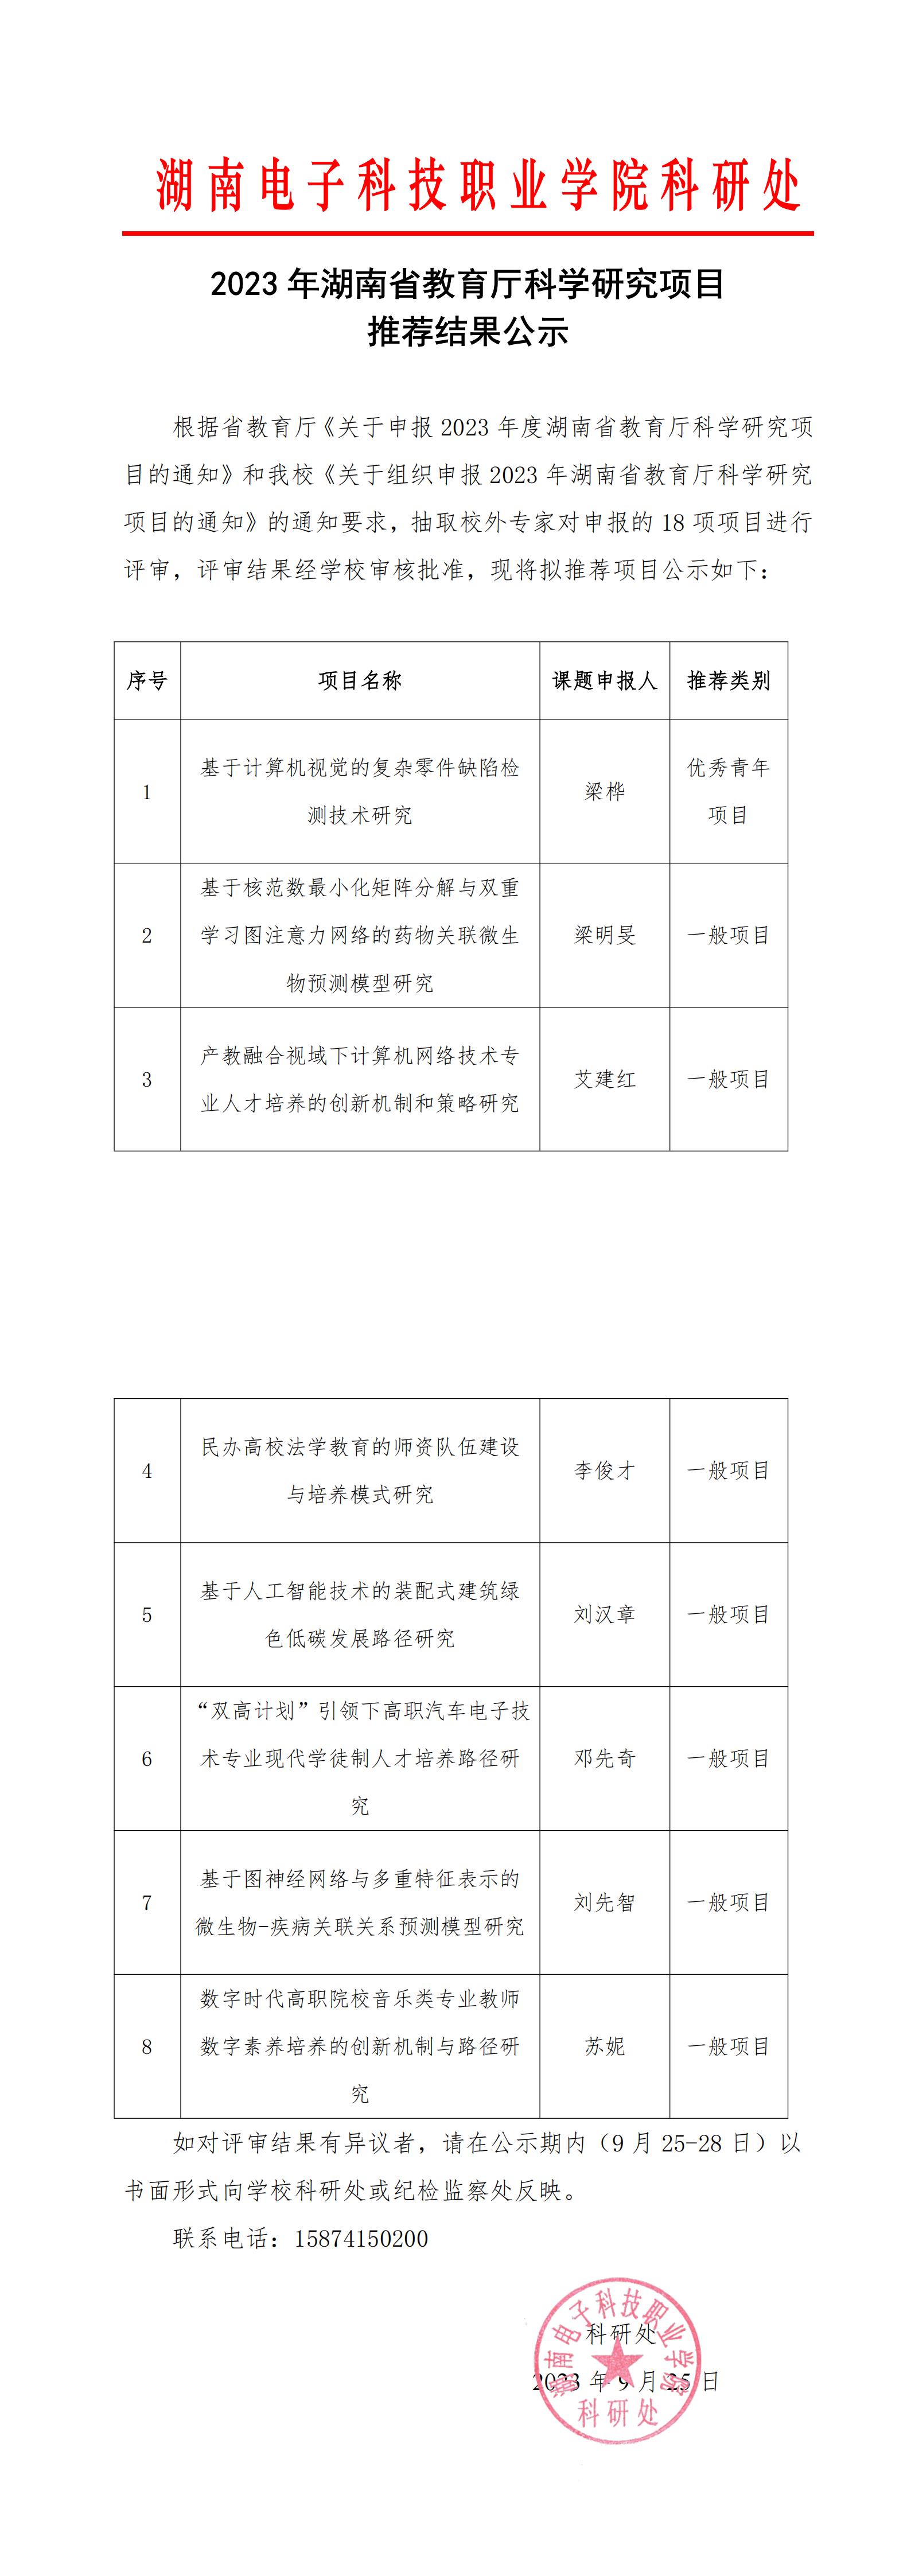 （加红头）2023年湖南省教育厅科学研究项目推荐结果公示_00(2).jpg